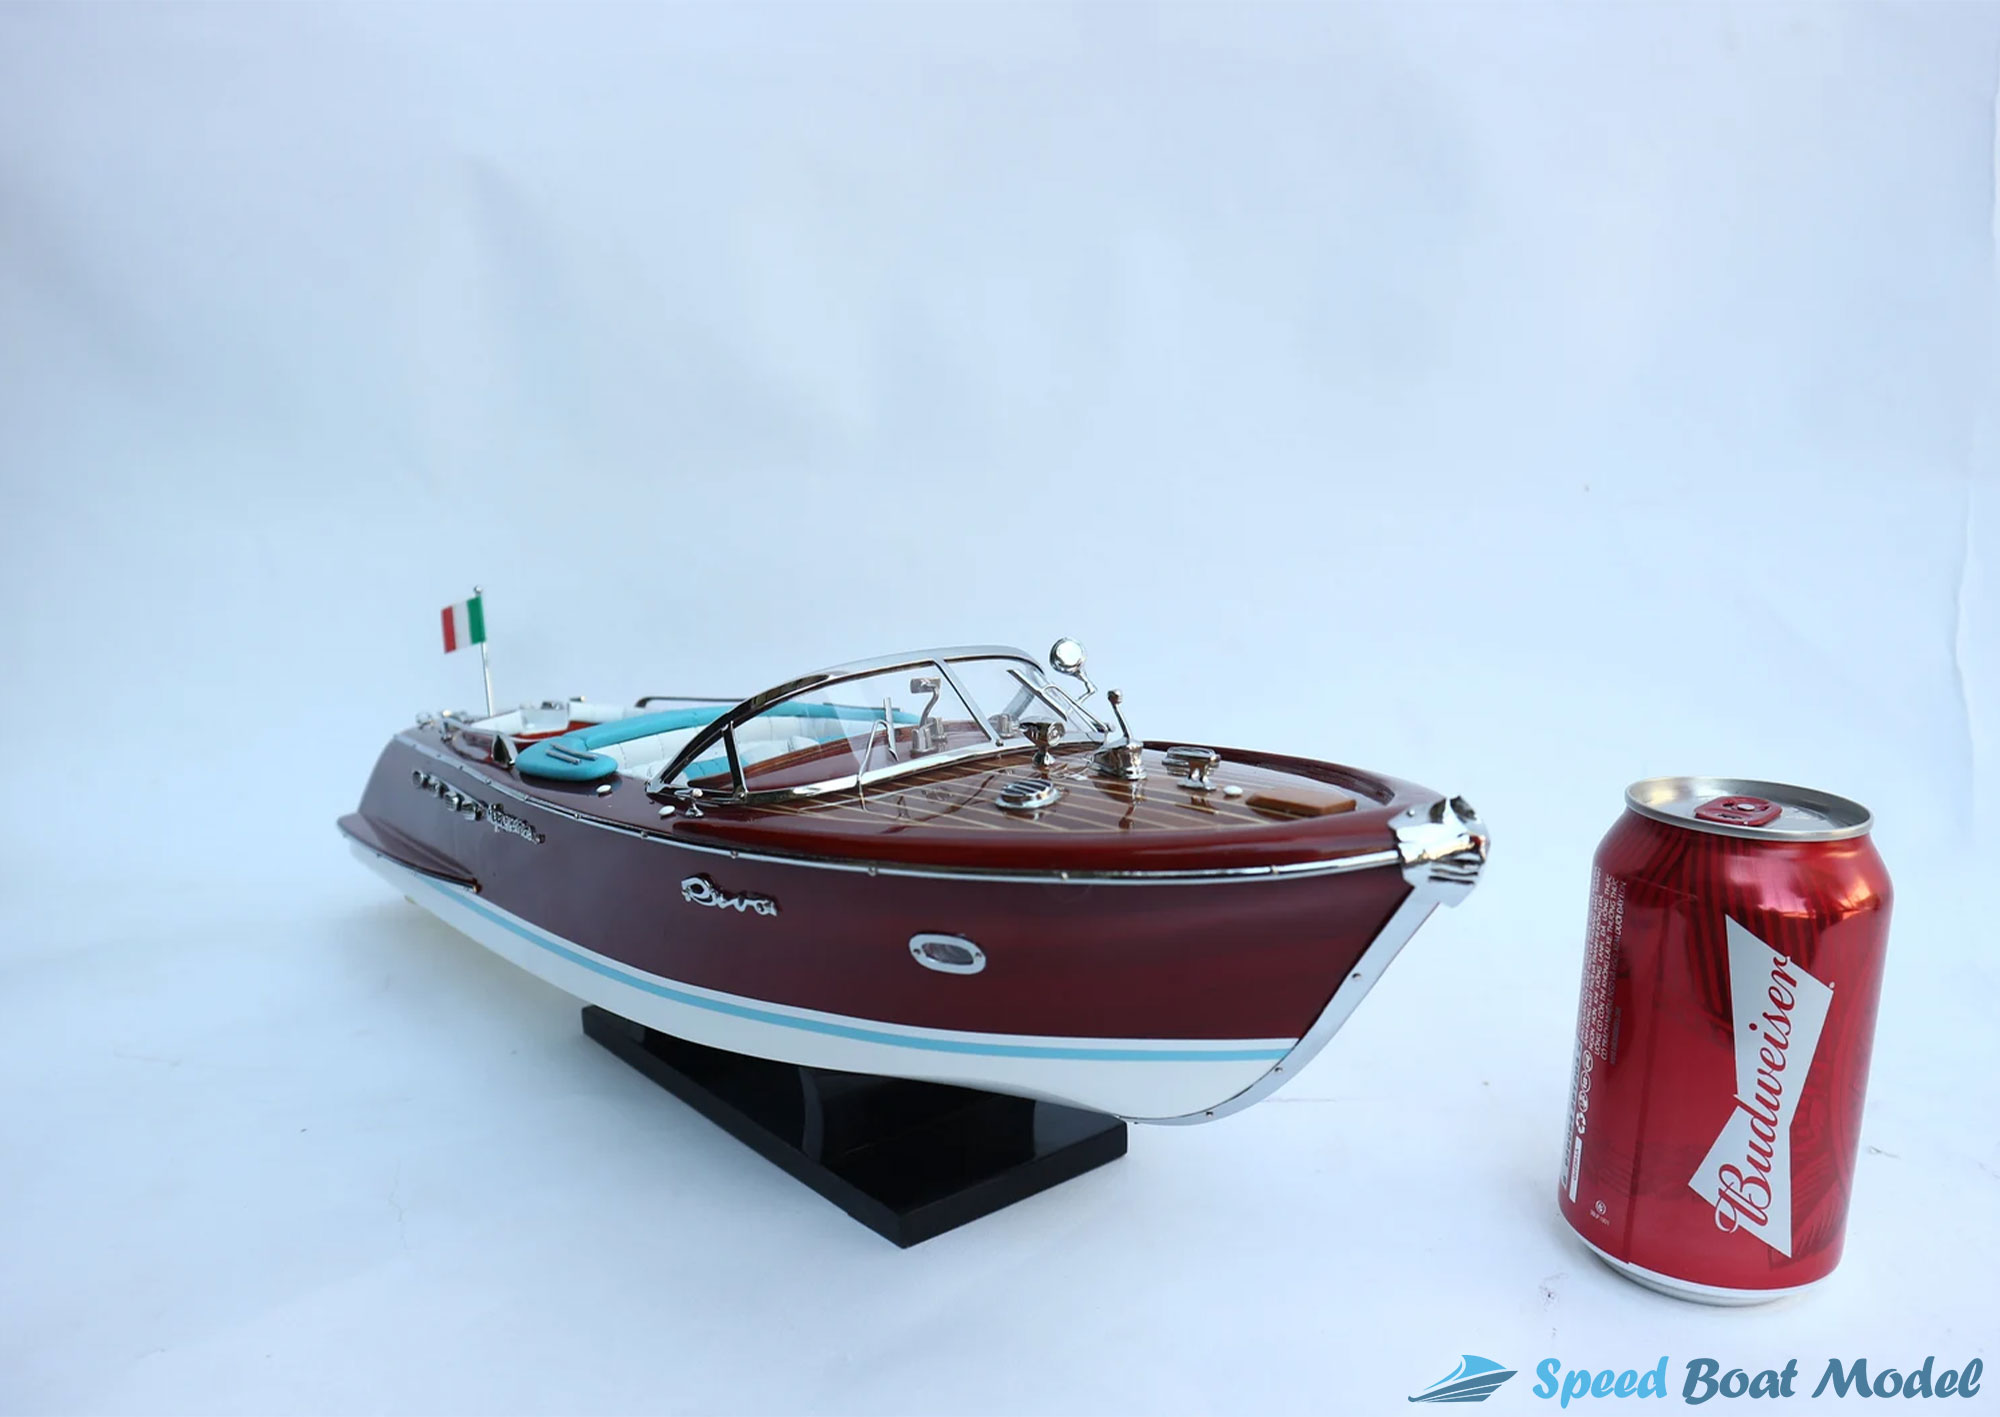 Super Riva Lamborghini Classic Speed Boat Model